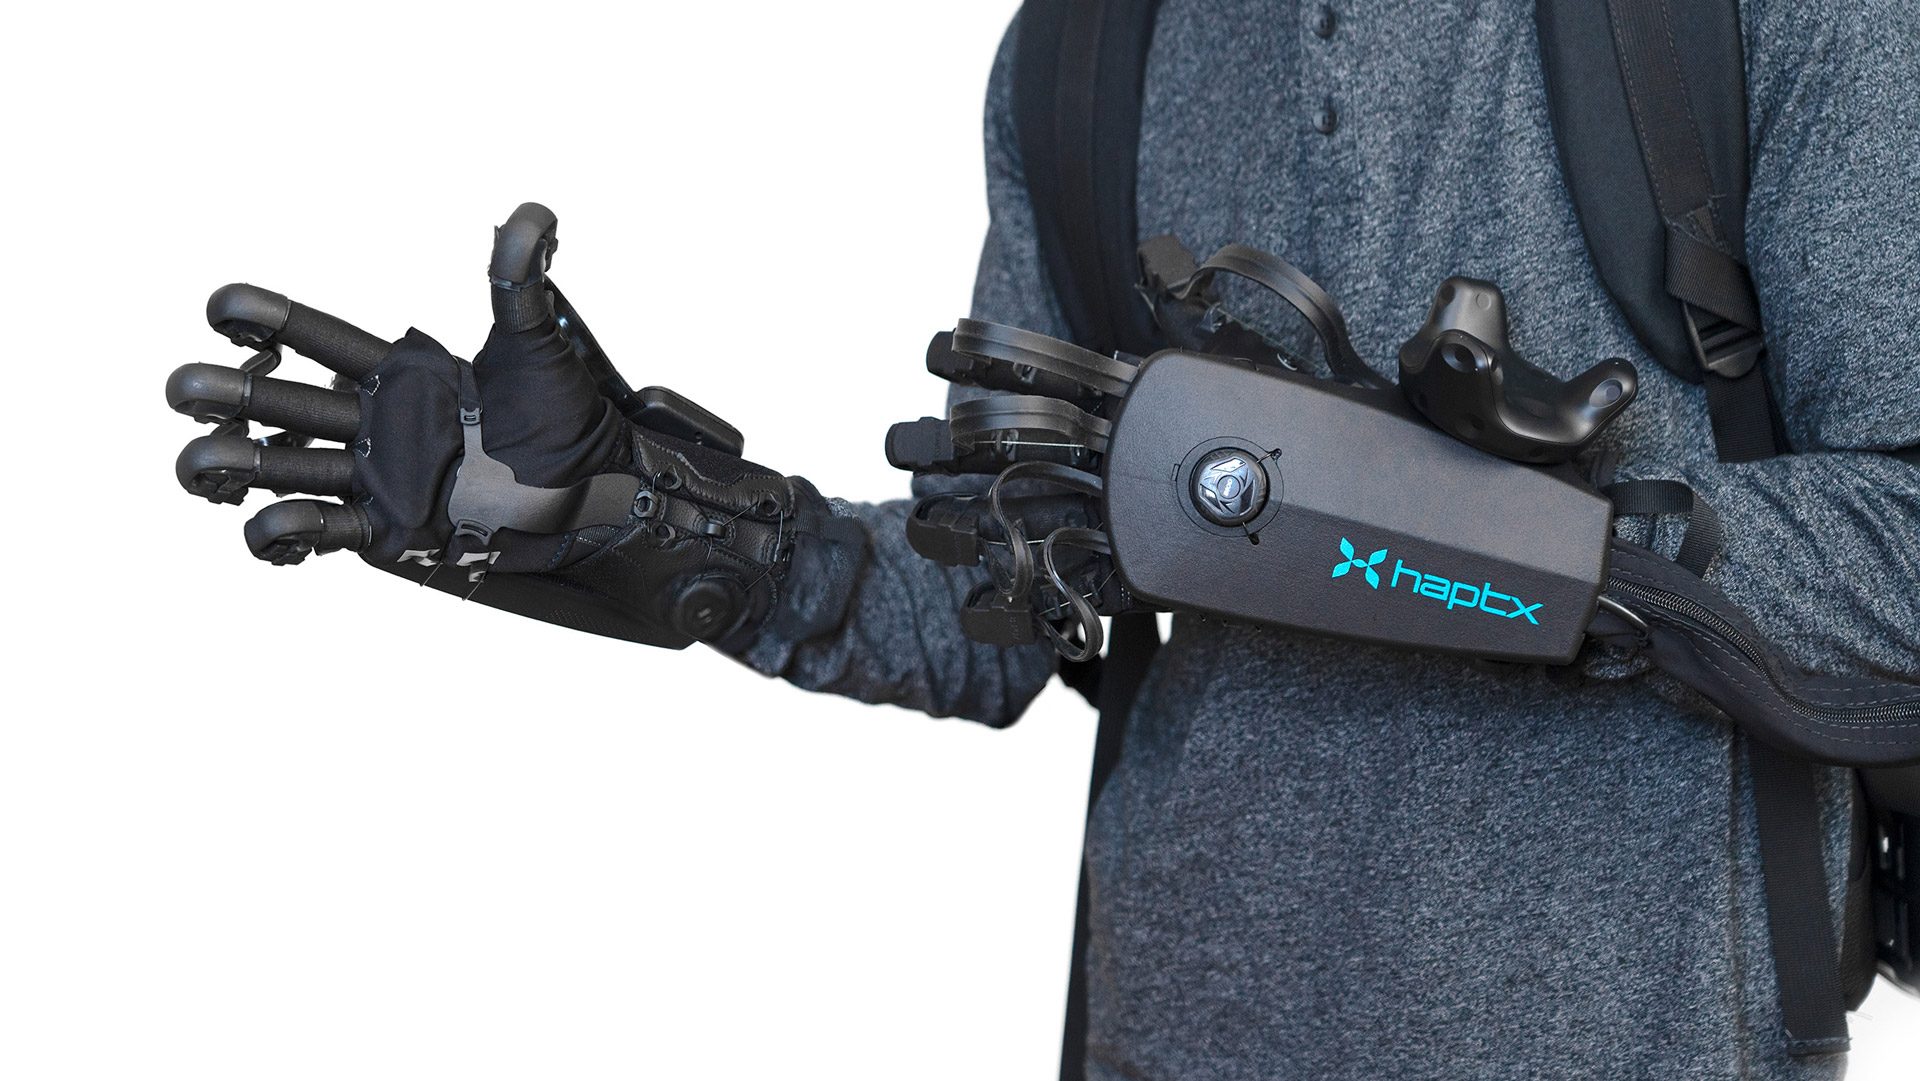 HaptX New & Improved DK2 Haptic VR Gloves for Enterprise